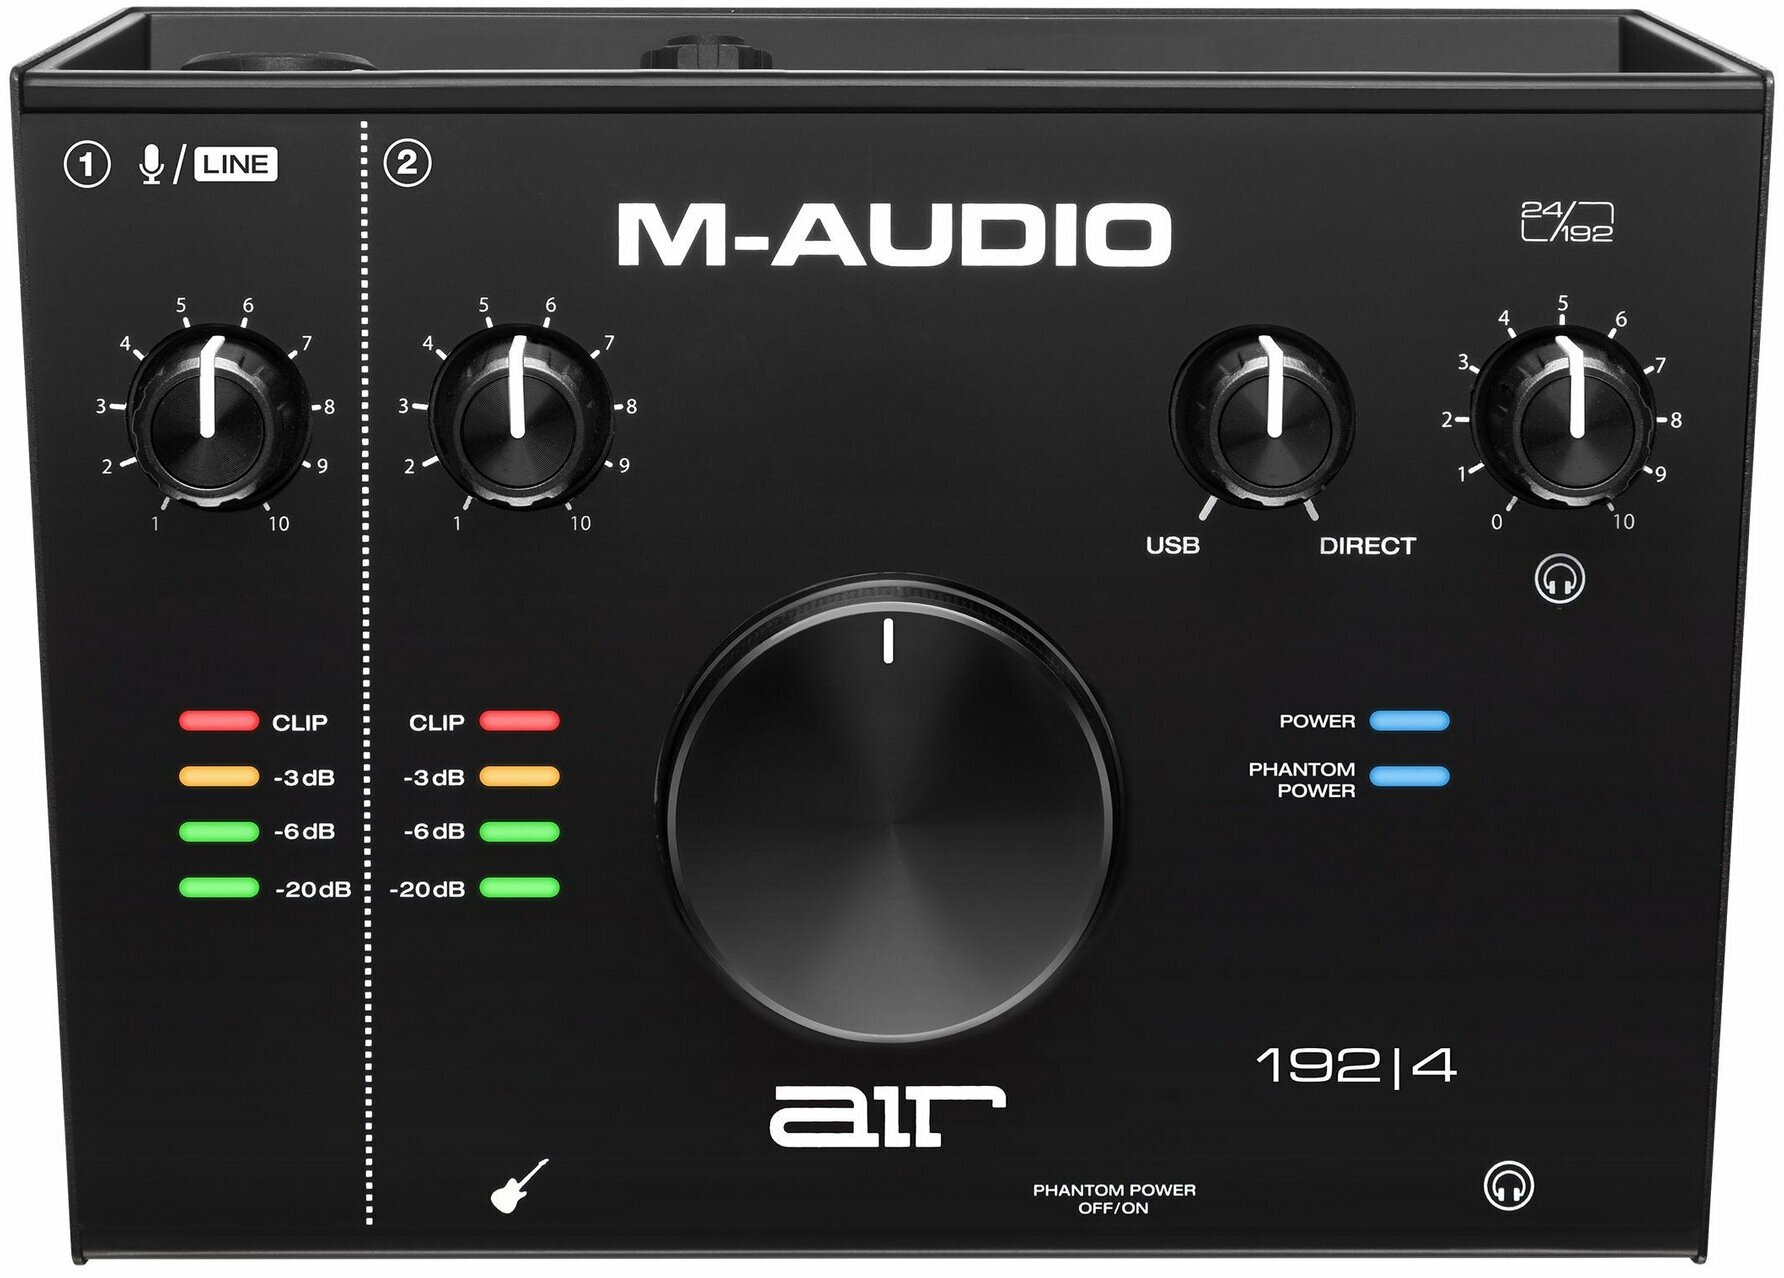 M-Audio AIR 192 I 4 USB аудио интерфейс, 24бит/192кГц, XLR/TRS микрофонный вход с фантомным питанием +48В, 1/4 TS Jack инструментальный вход, 2х1/4 TS